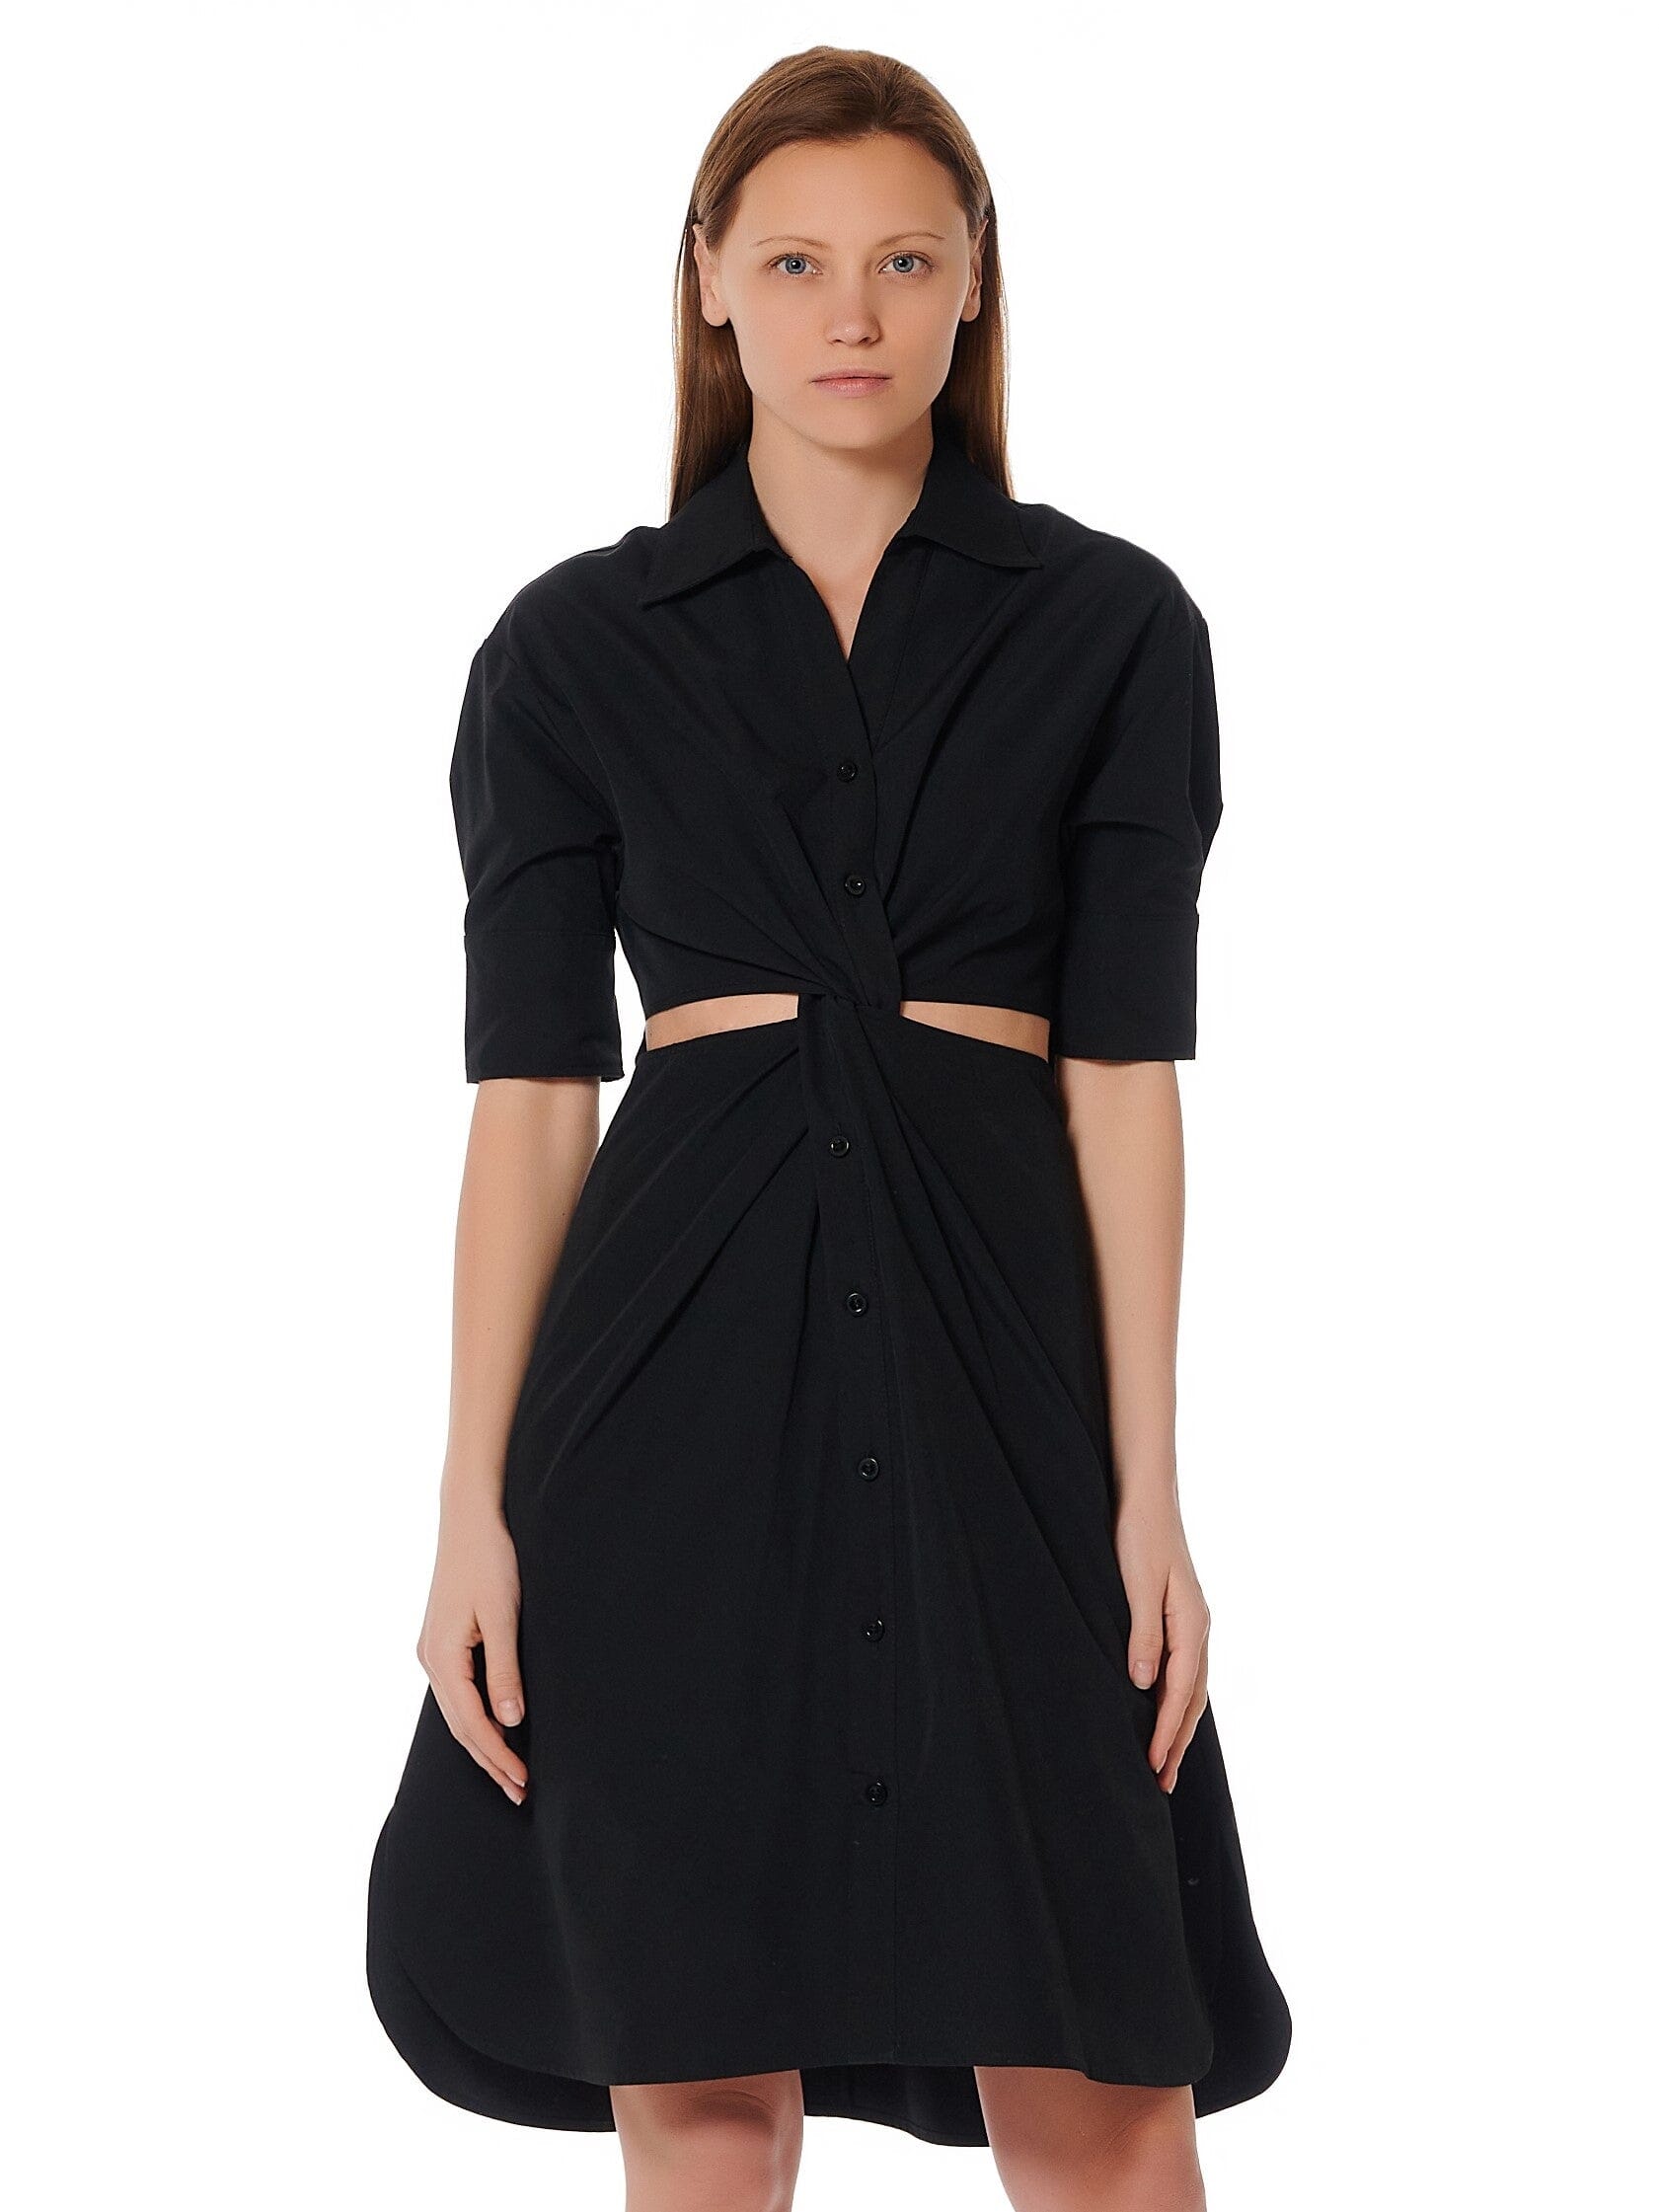 Cut Out Button Down Twist Knot Dress DRESS Gracia Fashion BLACK S 